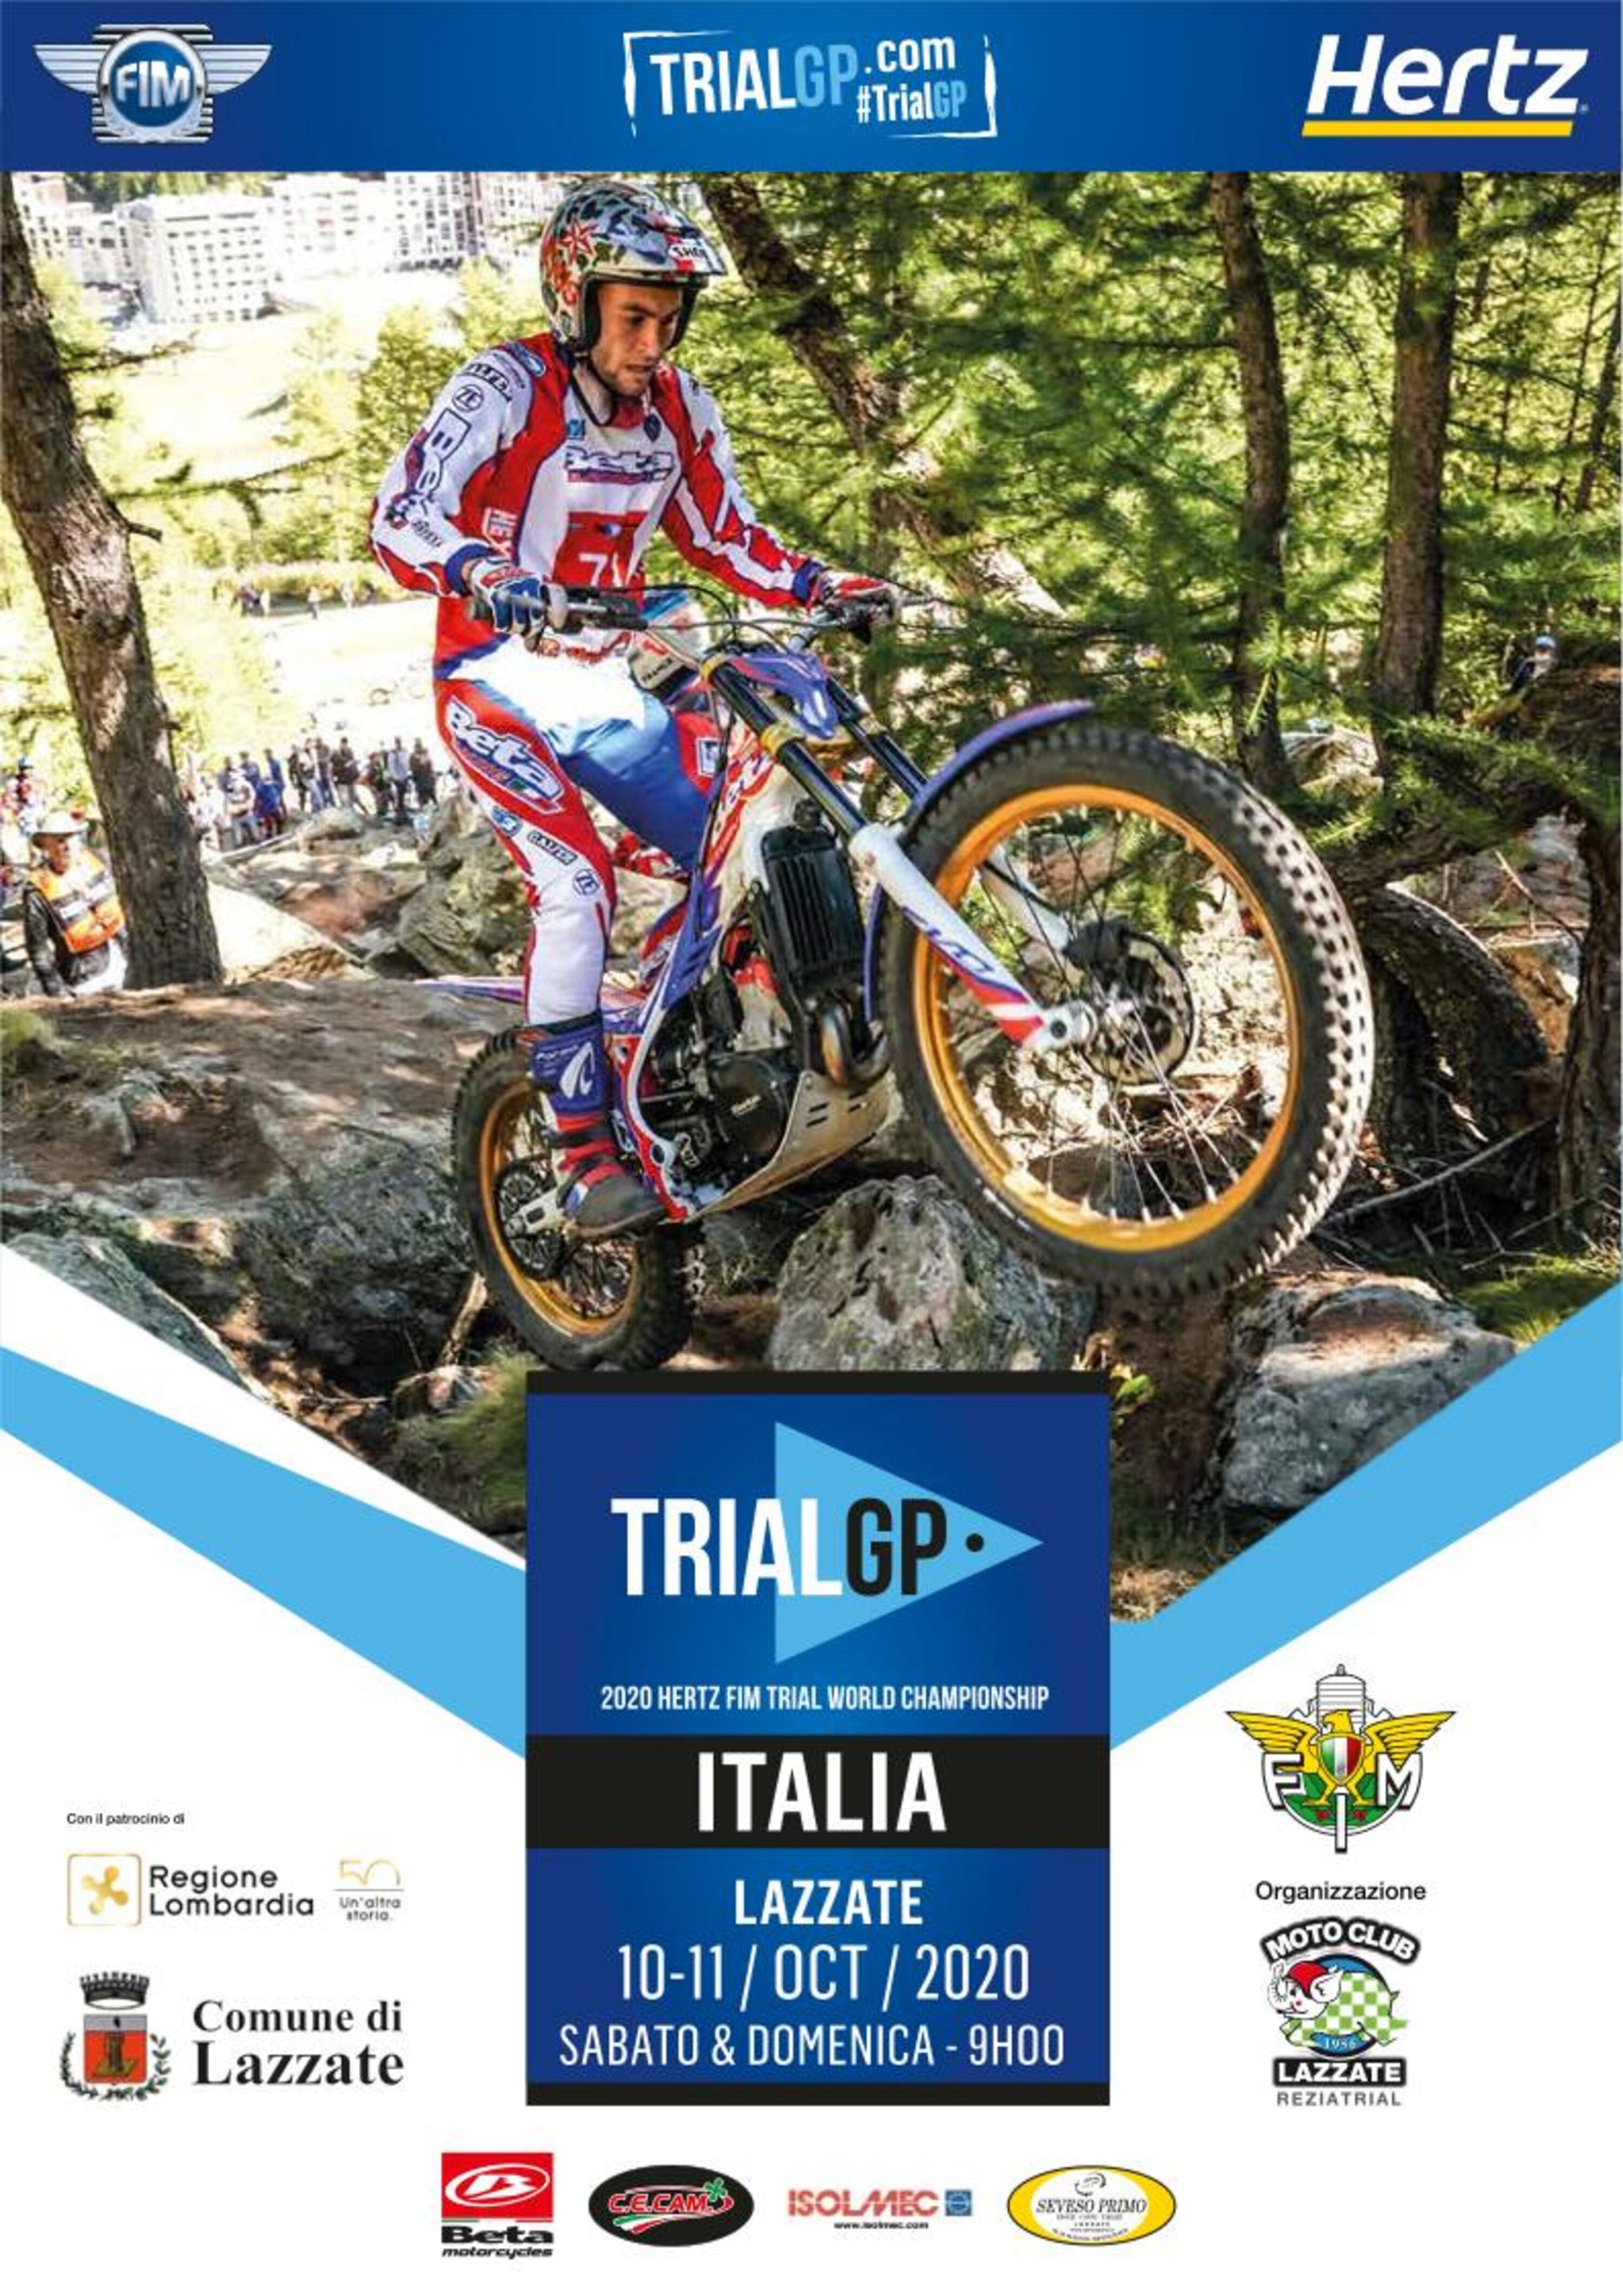 TrialGP: finale mondiale a Lazzate (MB)